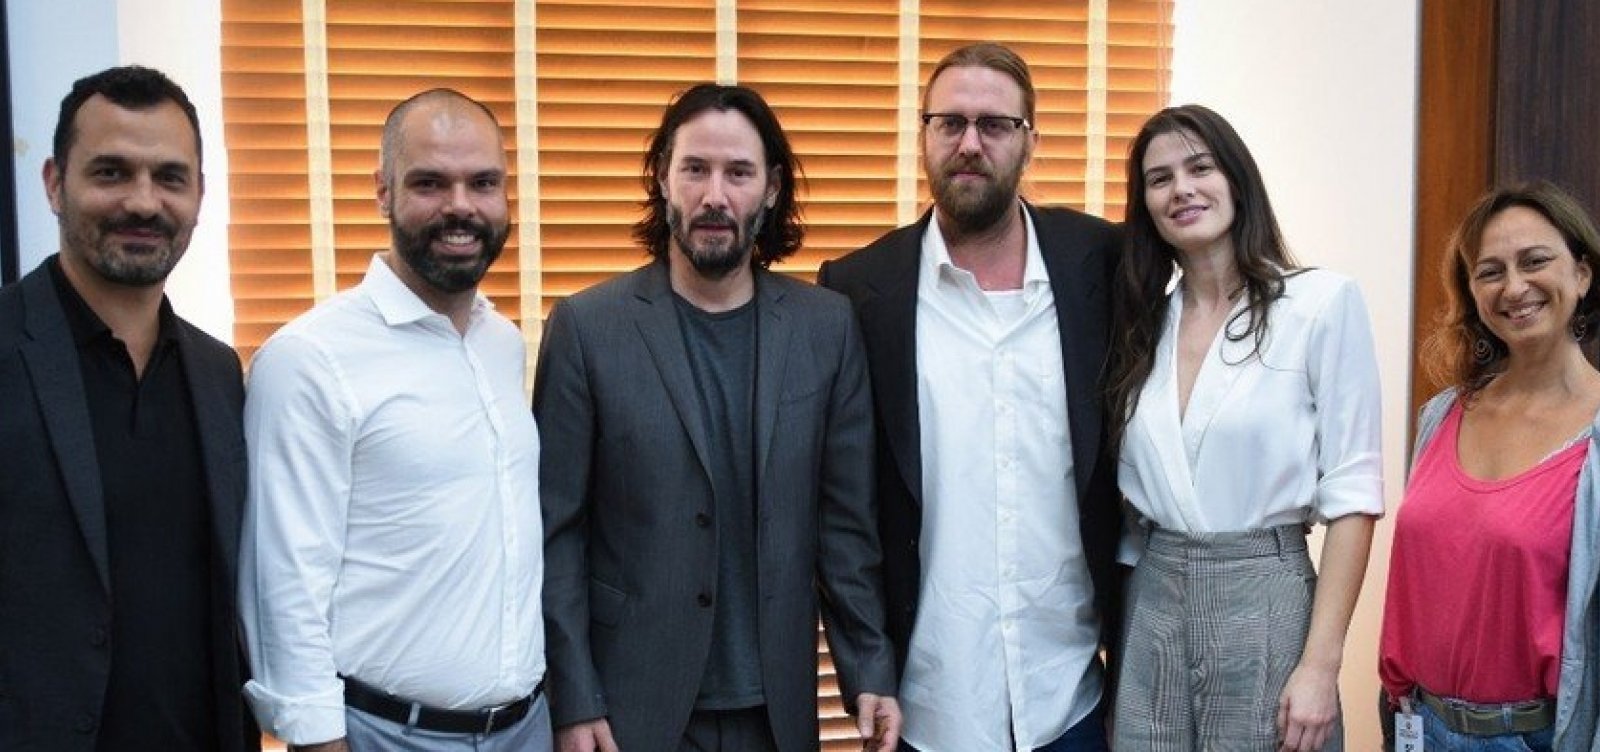 Keanu Reeves vem a São Paulo pedir apoio para gravar série na cidade